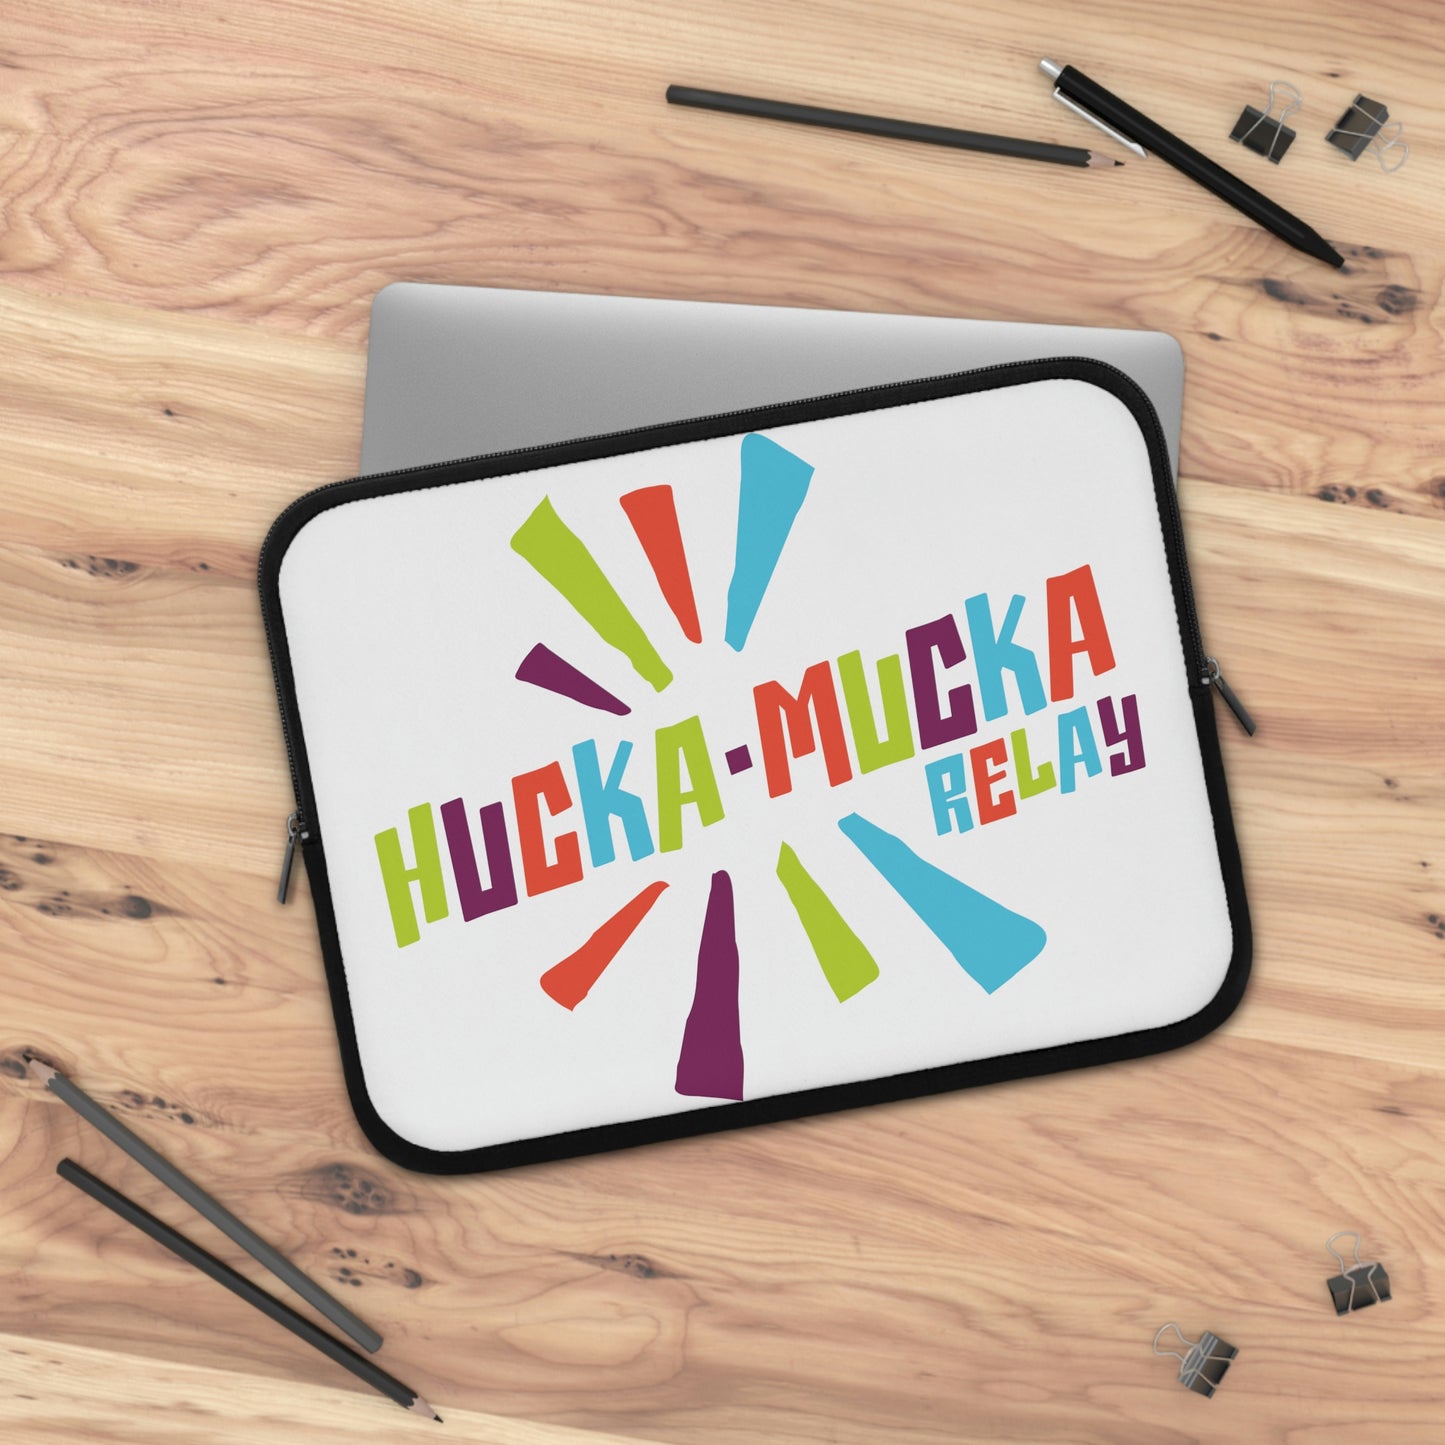 HUCKA-MUCKA / Laptop Sleeve